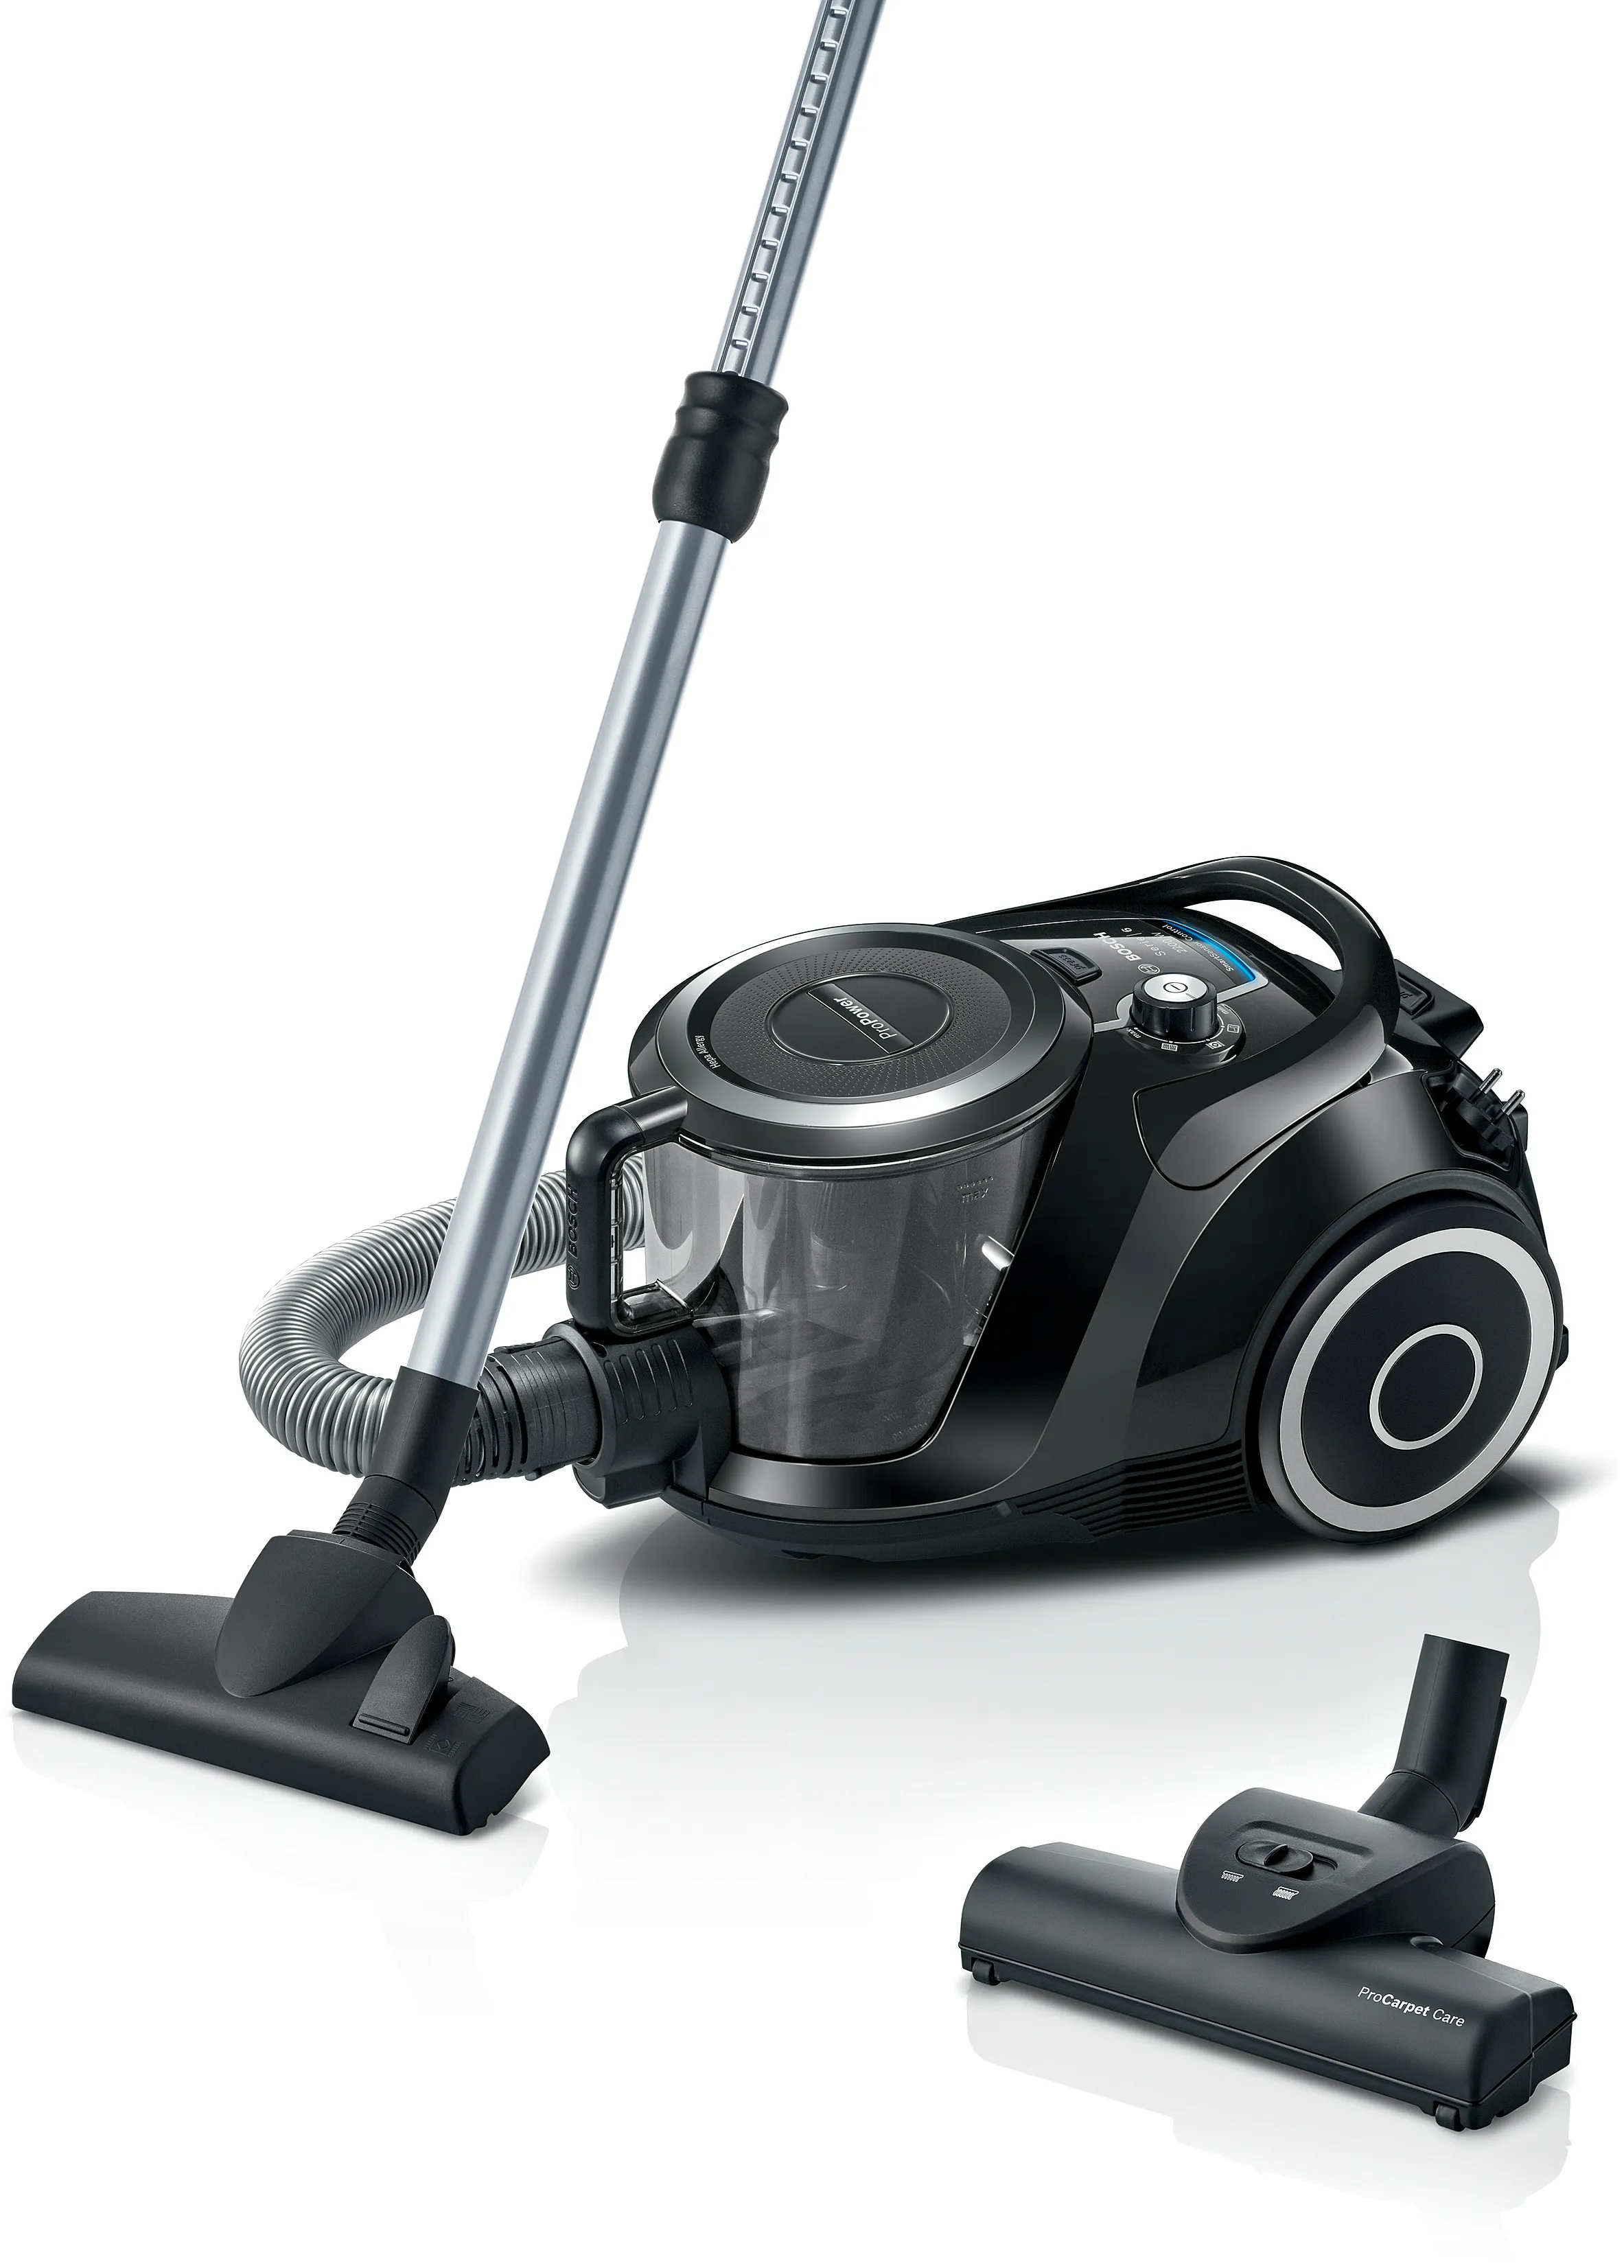 Series 6 Bagless vacuum cleaner Black 